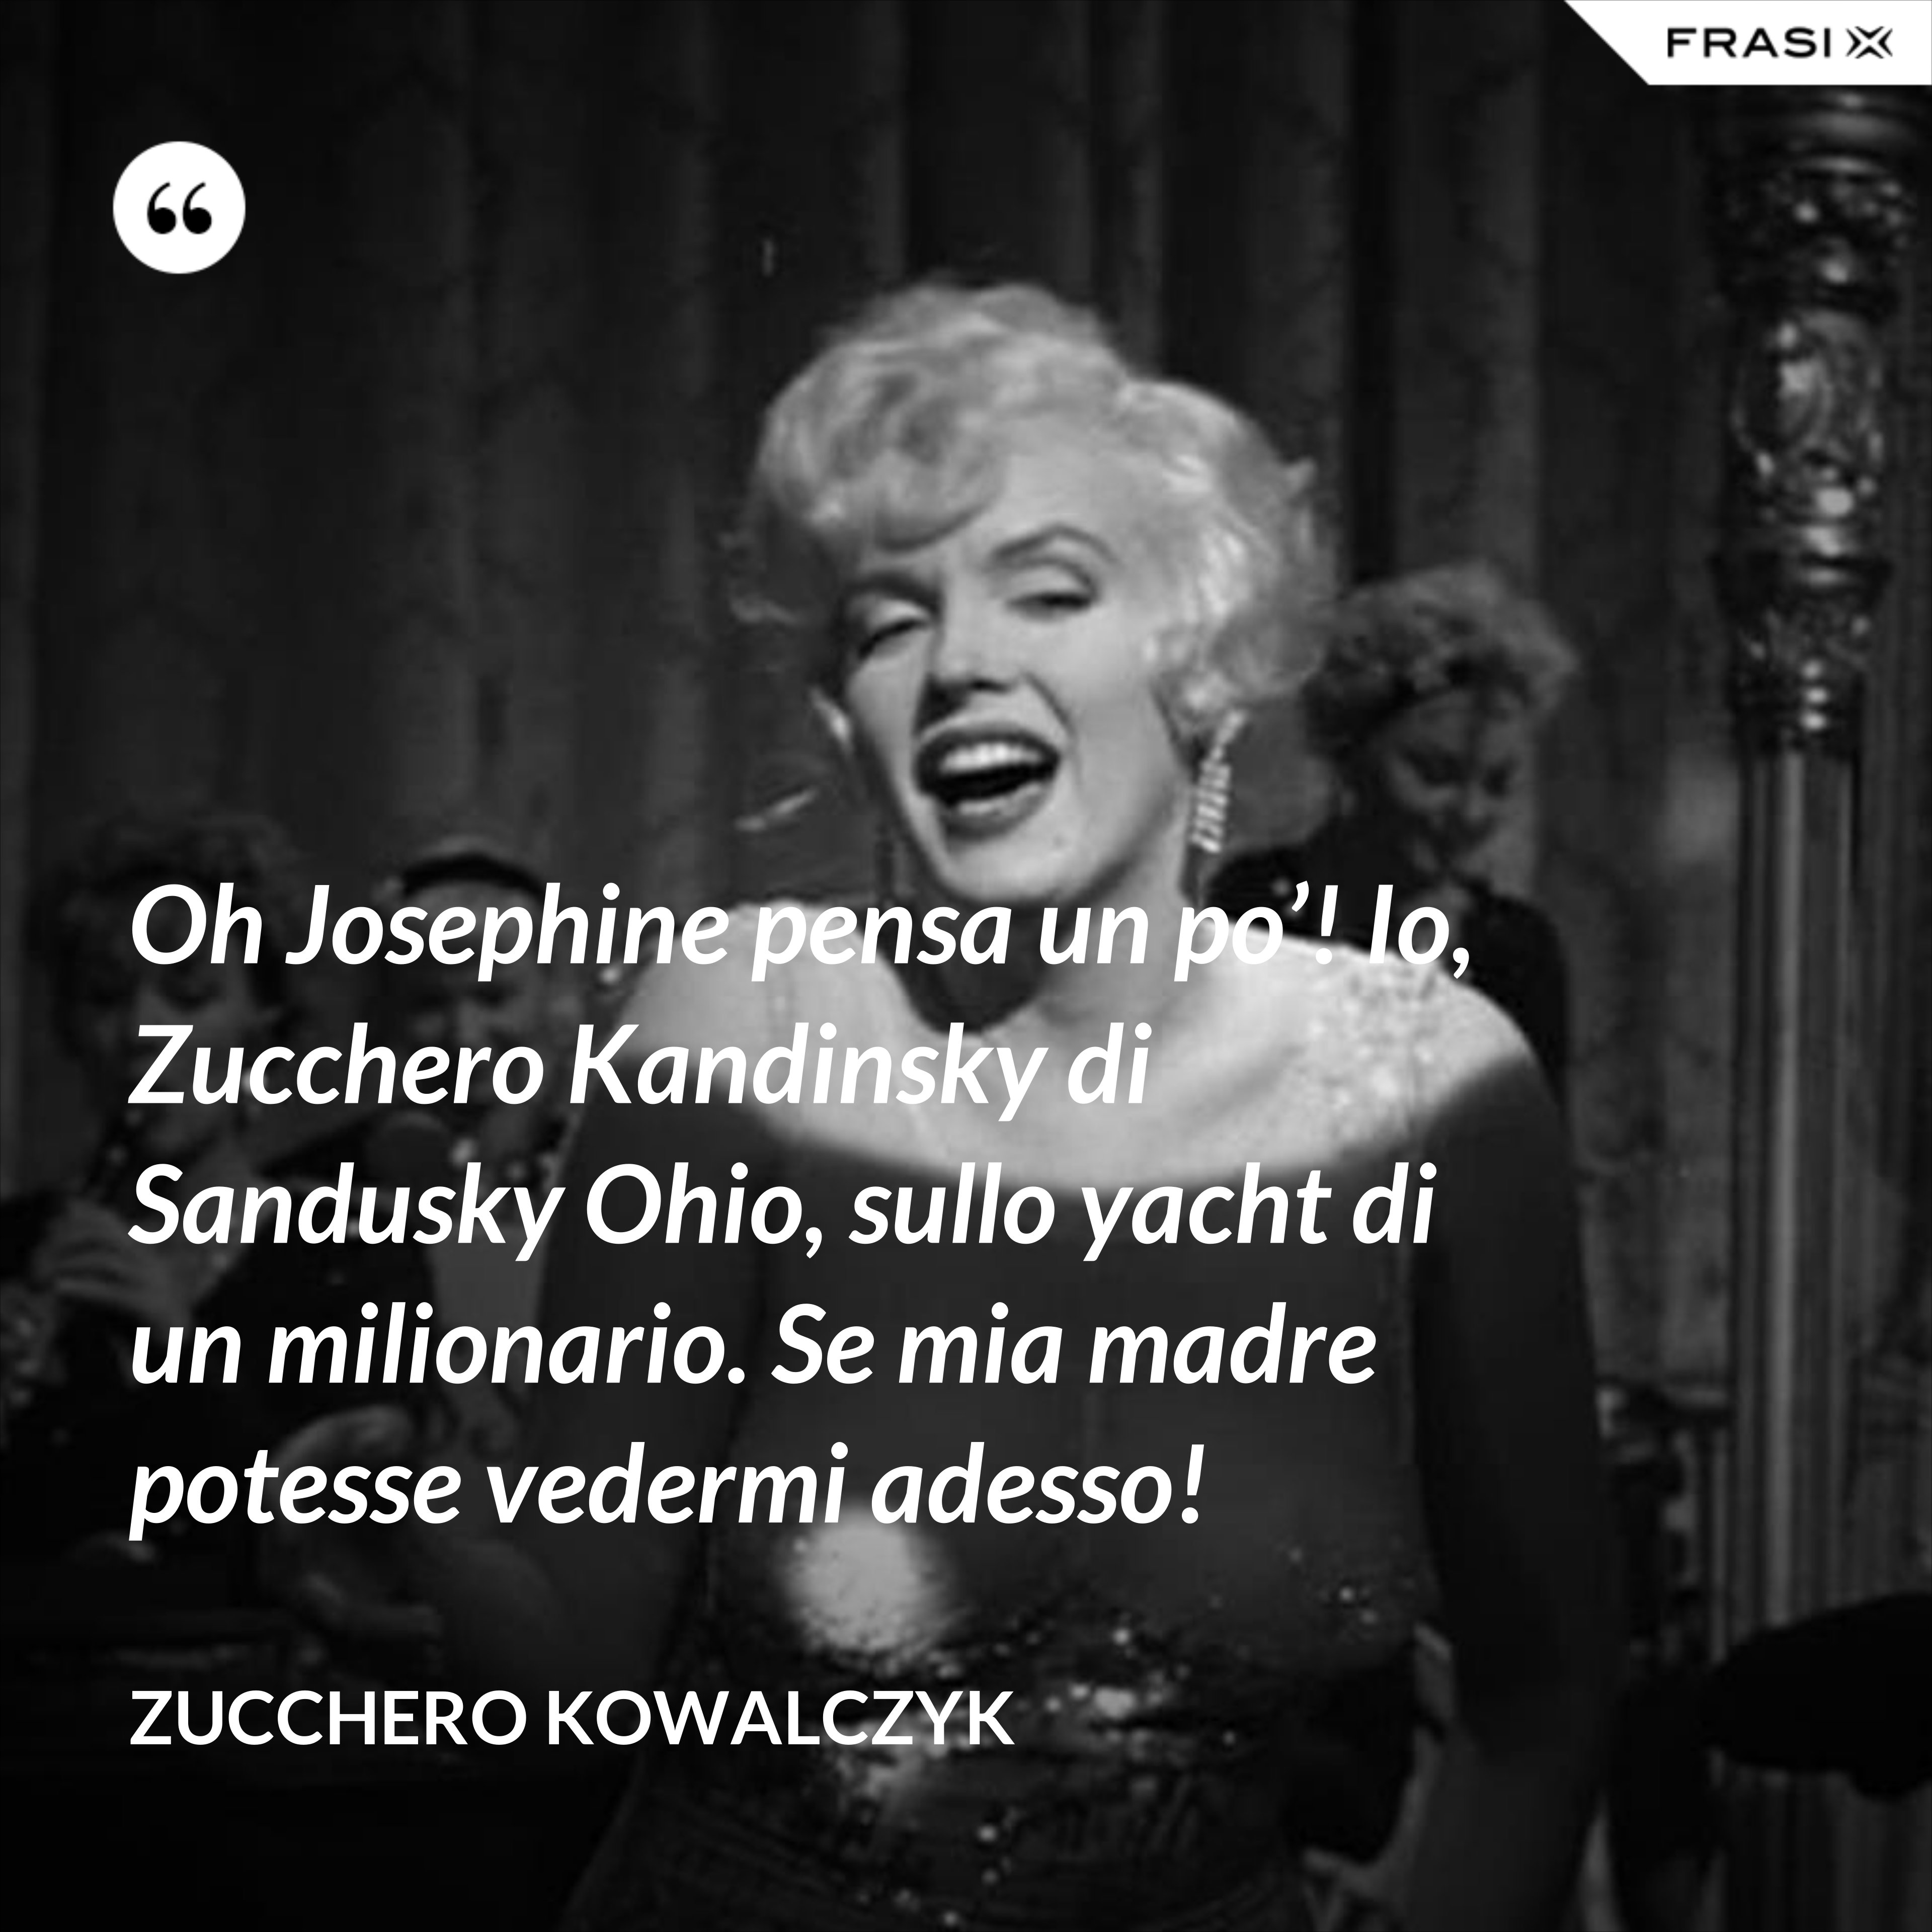 Oh Josephine pensa un po’! Io, Zucchero Kandinsky di Sandusky Ohio, sullo yacht di un milionario. Se mia madre potesse vedermi adesso! - Zucchero Kowalczyk